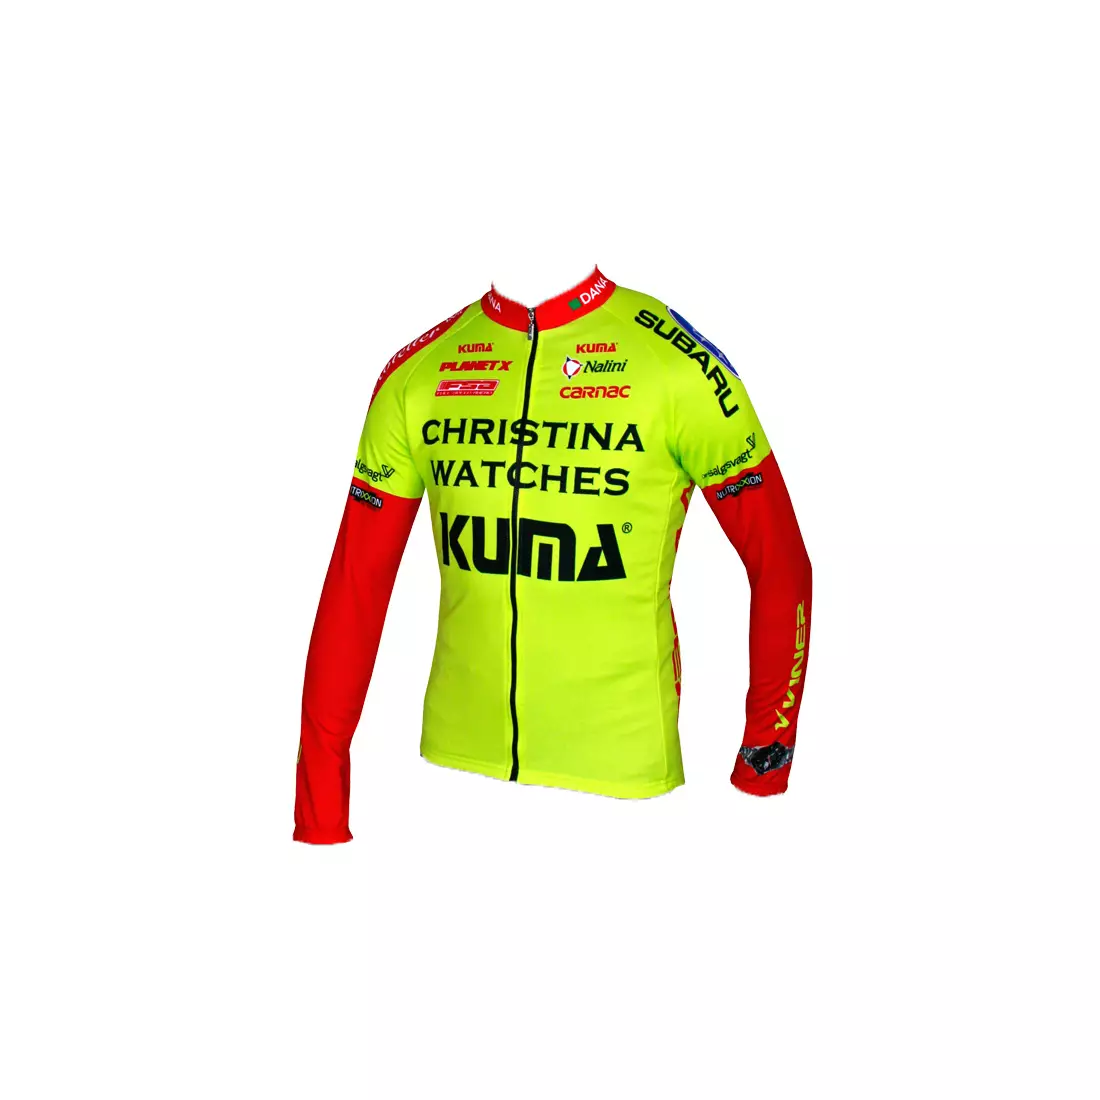 NALINI - TEAM CHRISTINA WATCHES-KUMA 2014 - cycling sweatshirt